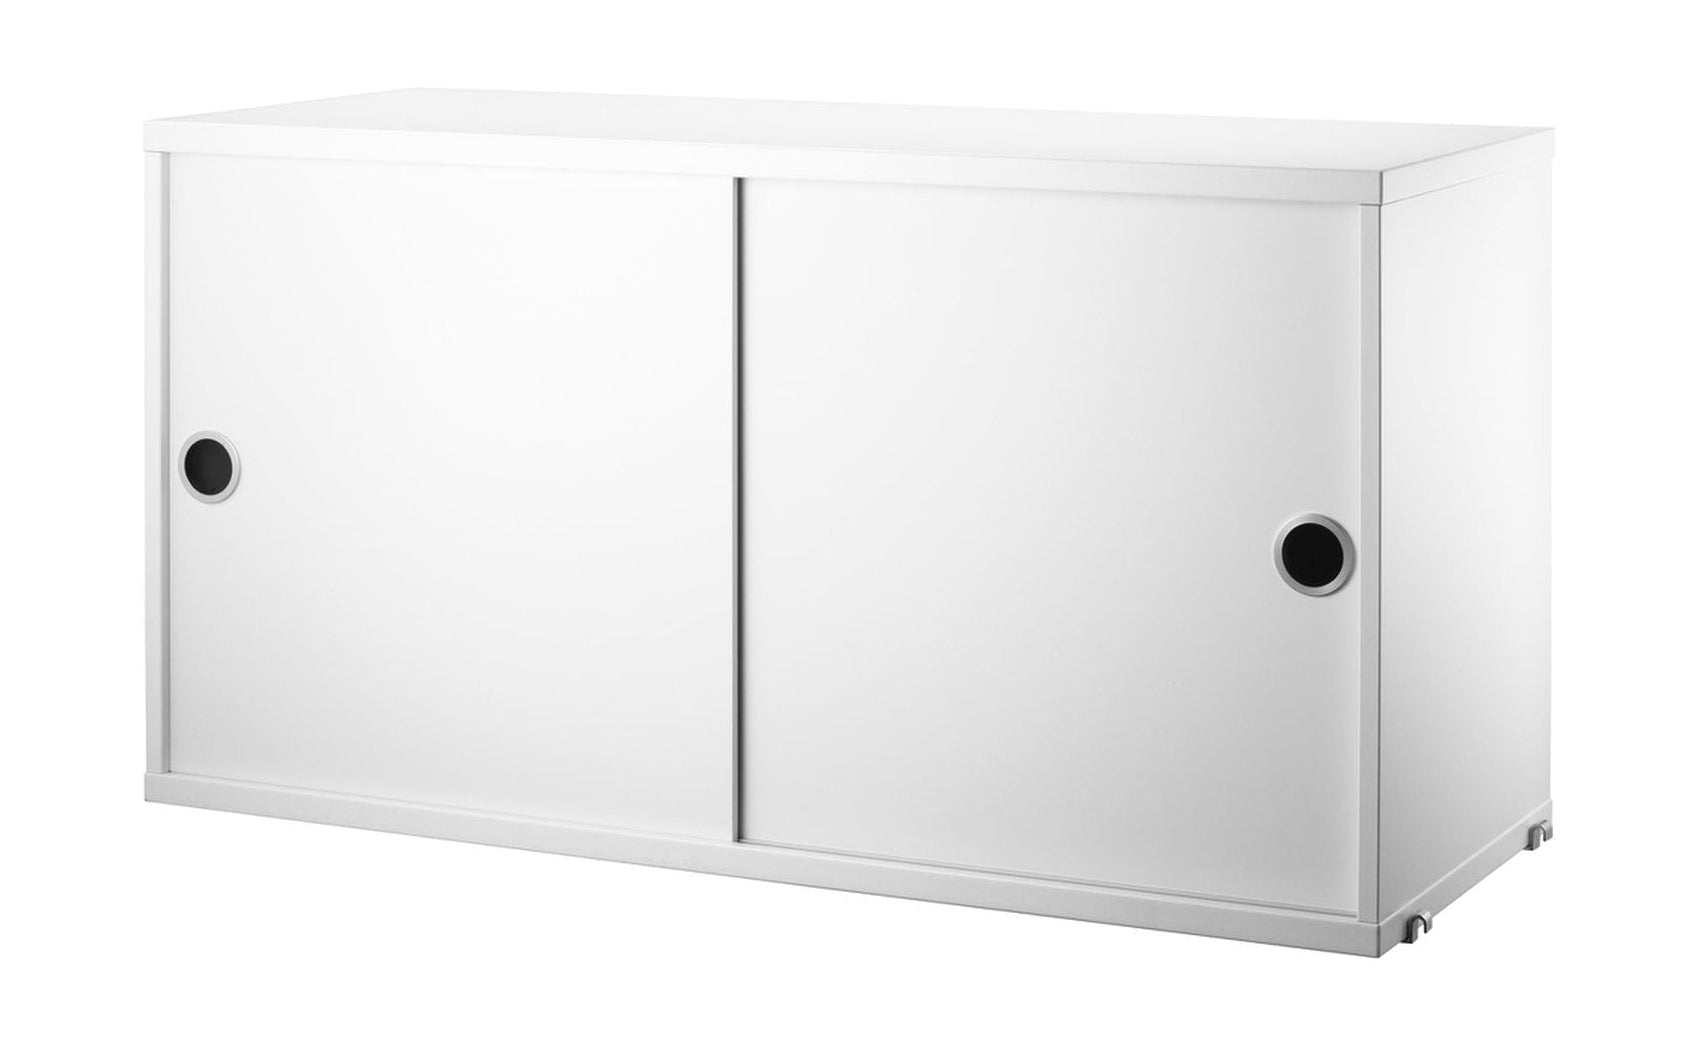 Kabinettelement des String Möbel String System mit Schiebetüren 30x78x42 cm, weiß